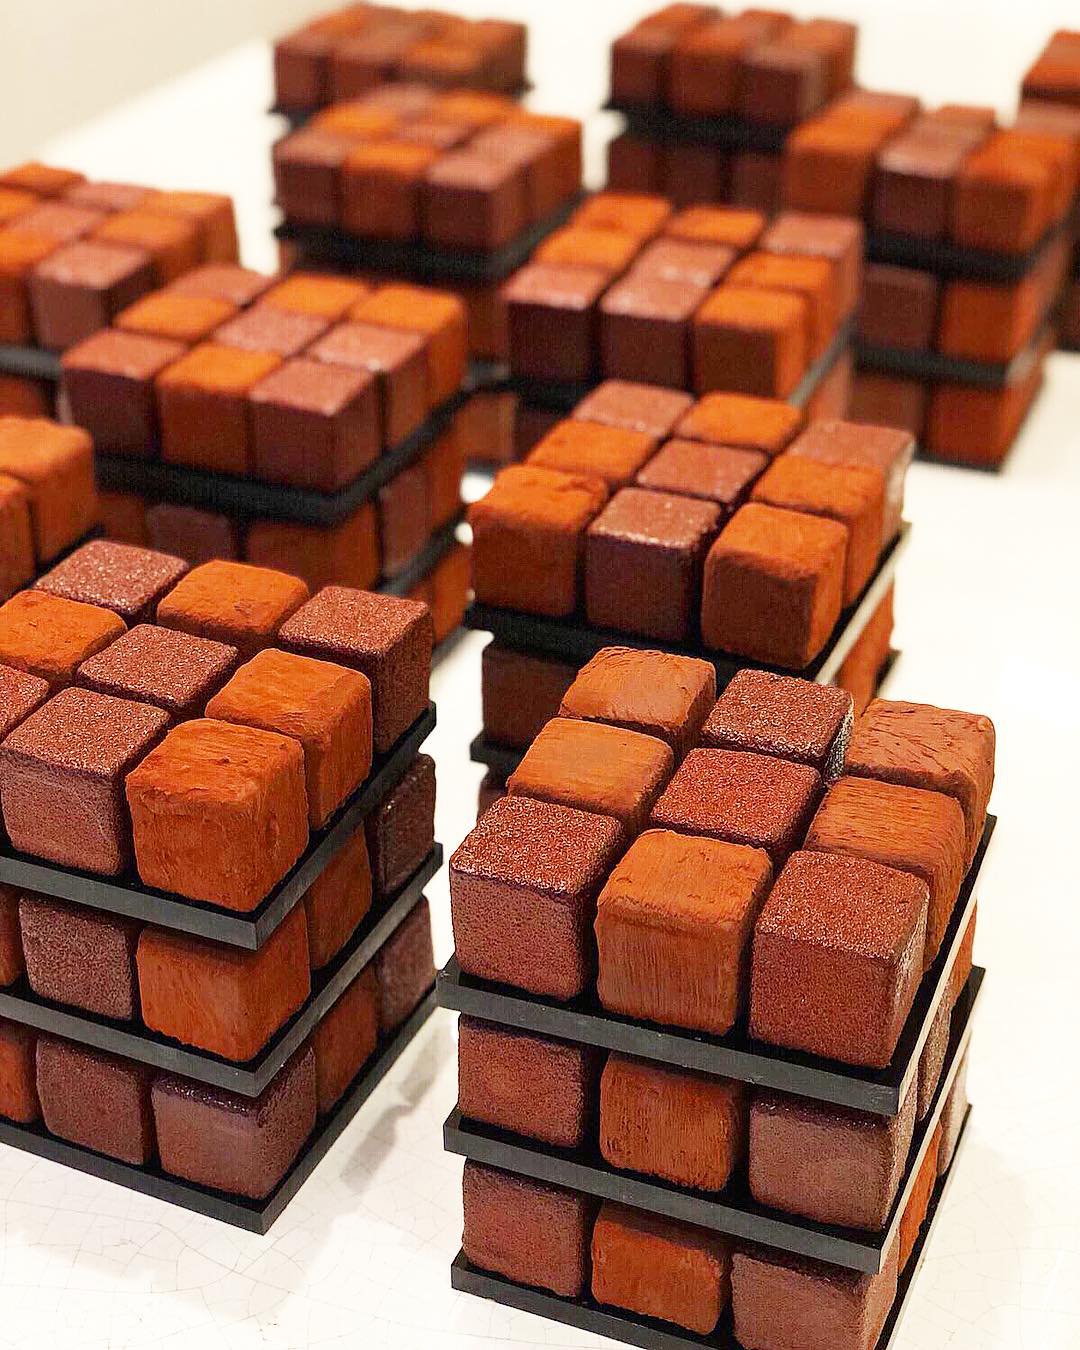 Cédric Grolet francia cukrász Rubik-kocka desszertje